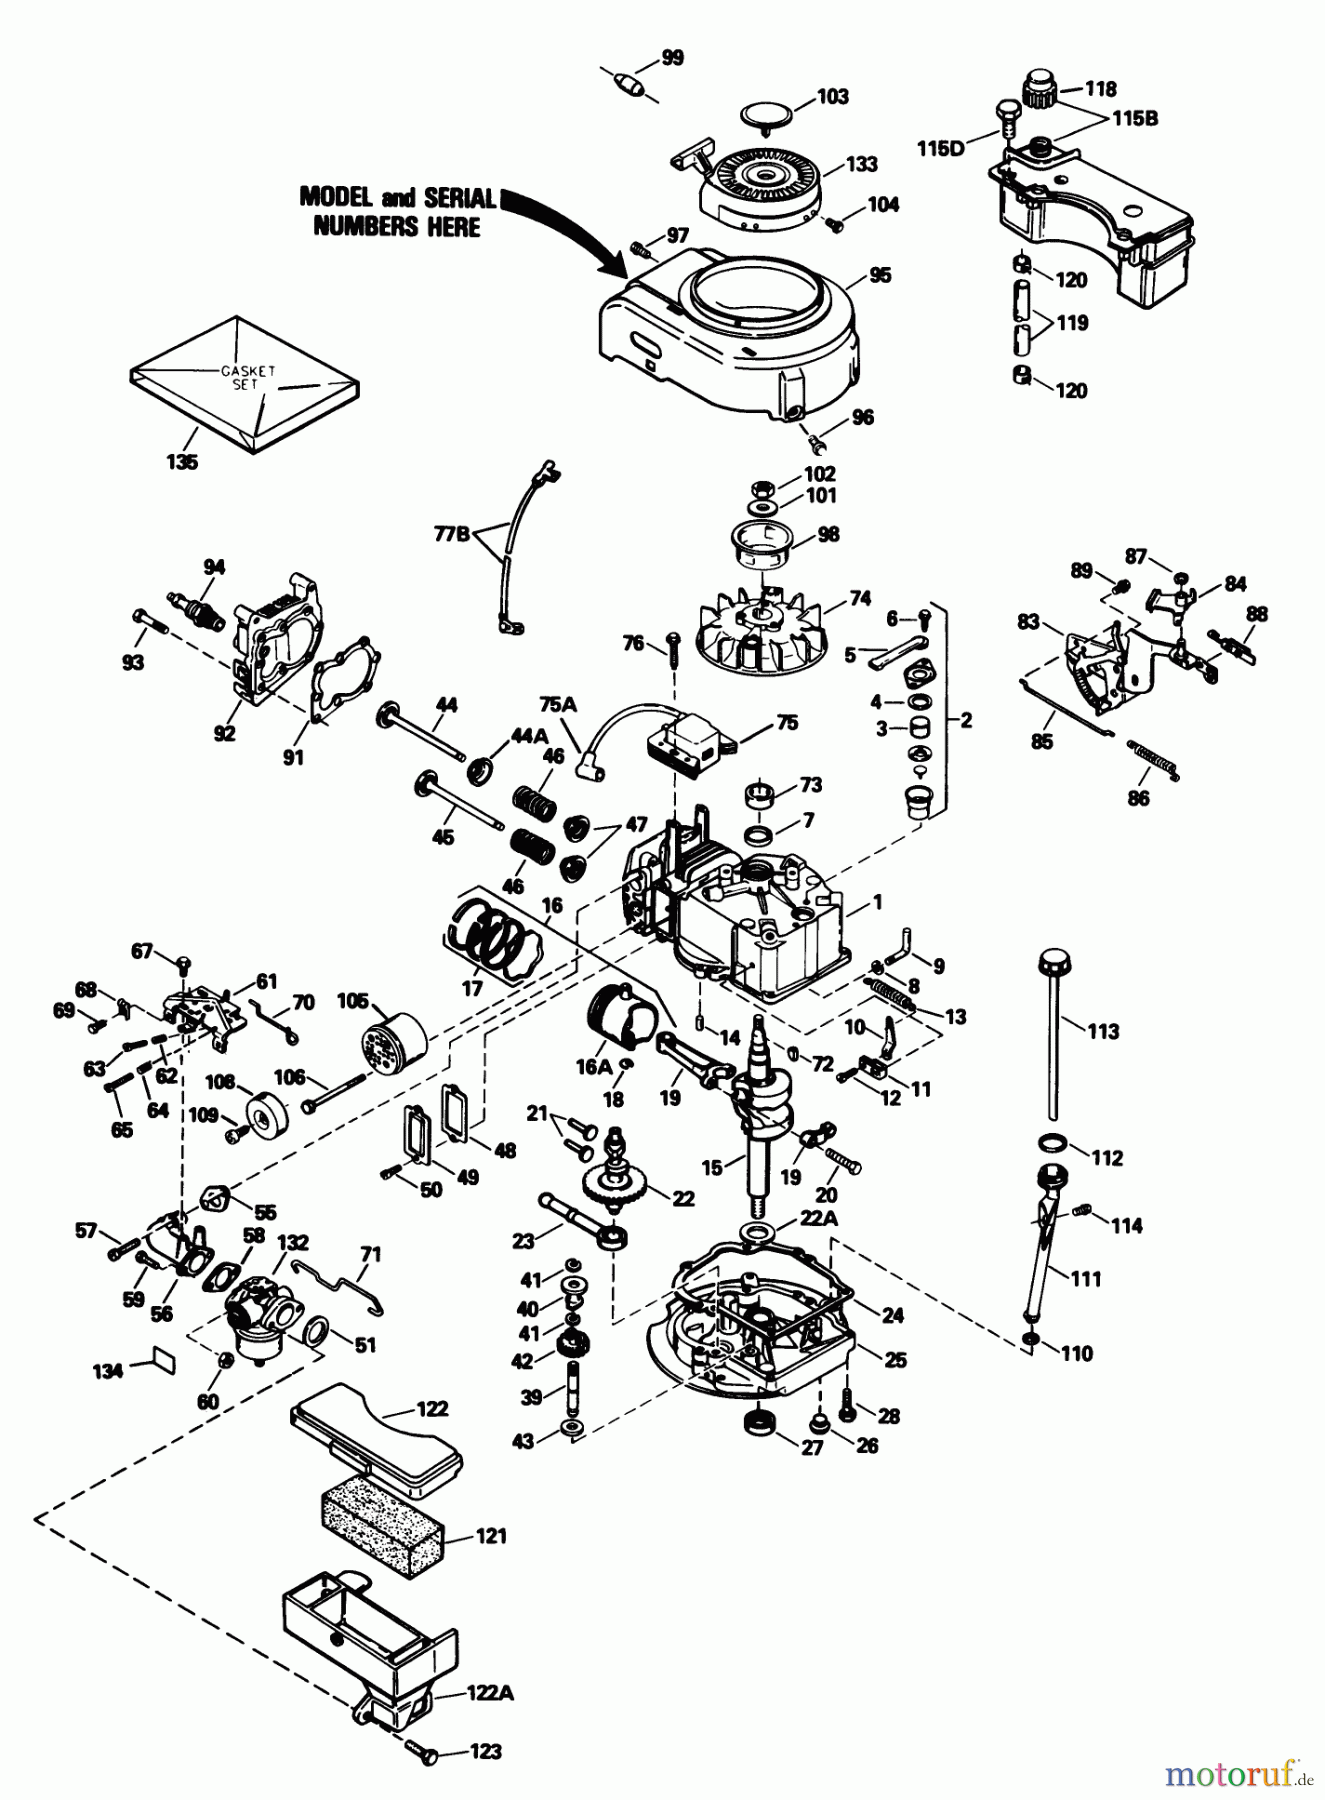  Toro Neu Mowers, Walk-Behind Seite 1 20588 - Toro Lawnmower, 1990 (0000001-0999999) ENGINE MODEL NO. TVS100-44015B